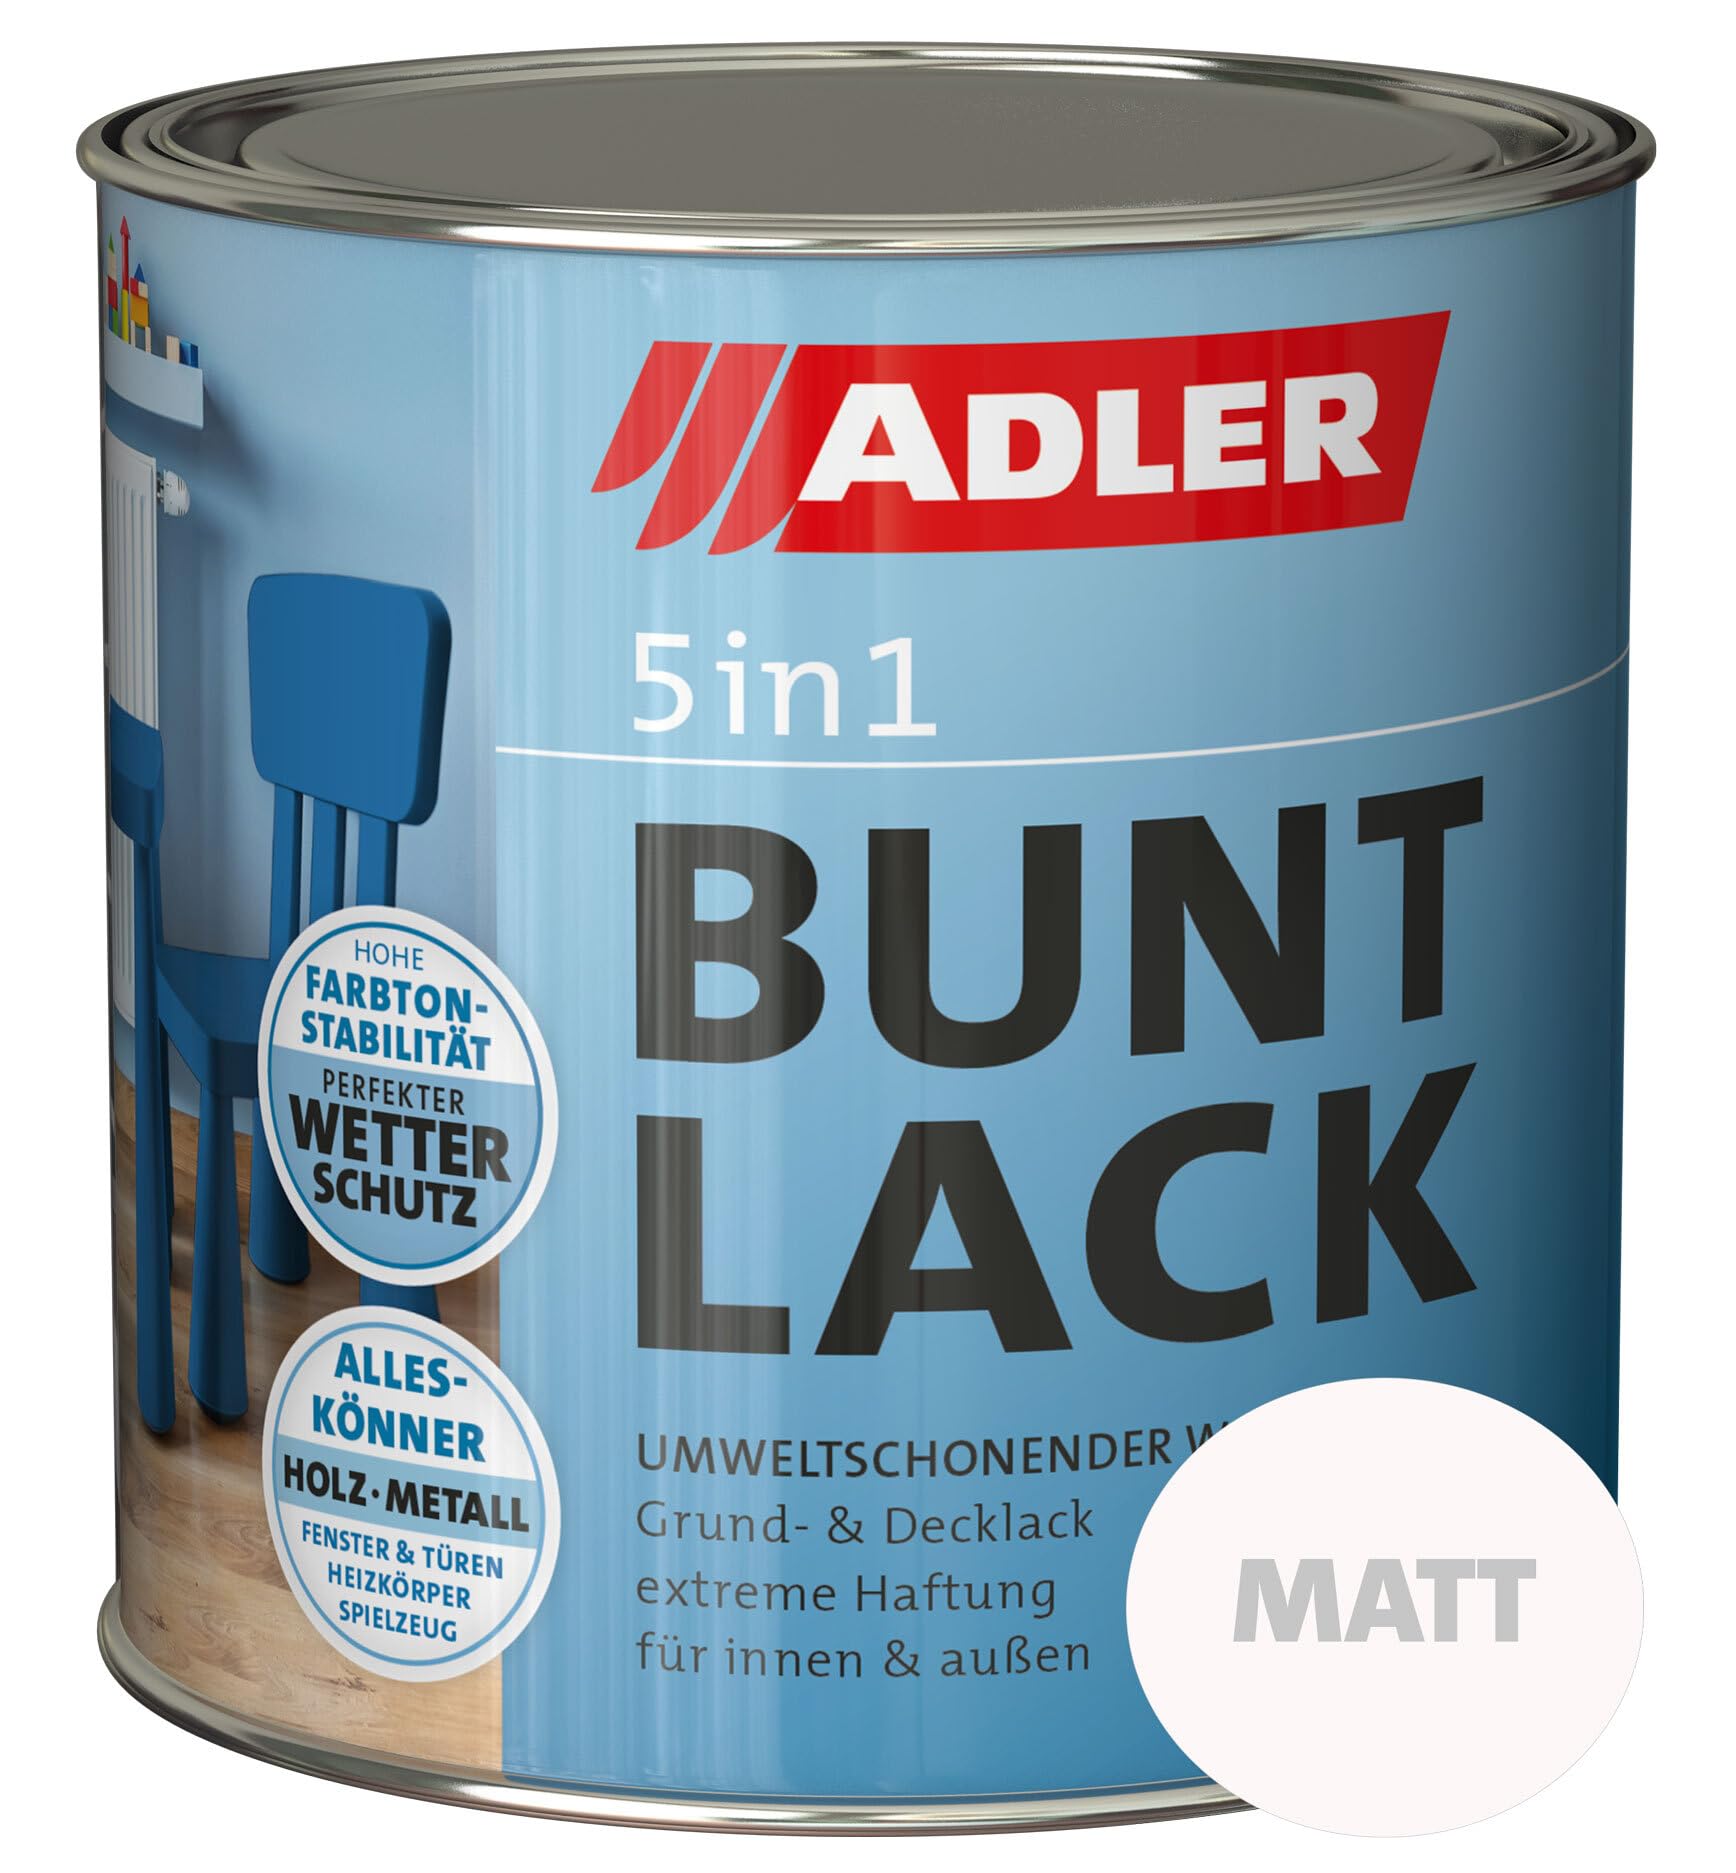 ADLER 5in1 Buntlack für Innen und Außen - 750ml - Wetterfester Lack und Grundierung für Holz, Metall & Kunststoff - Matt, RAL5010 Enzianblau